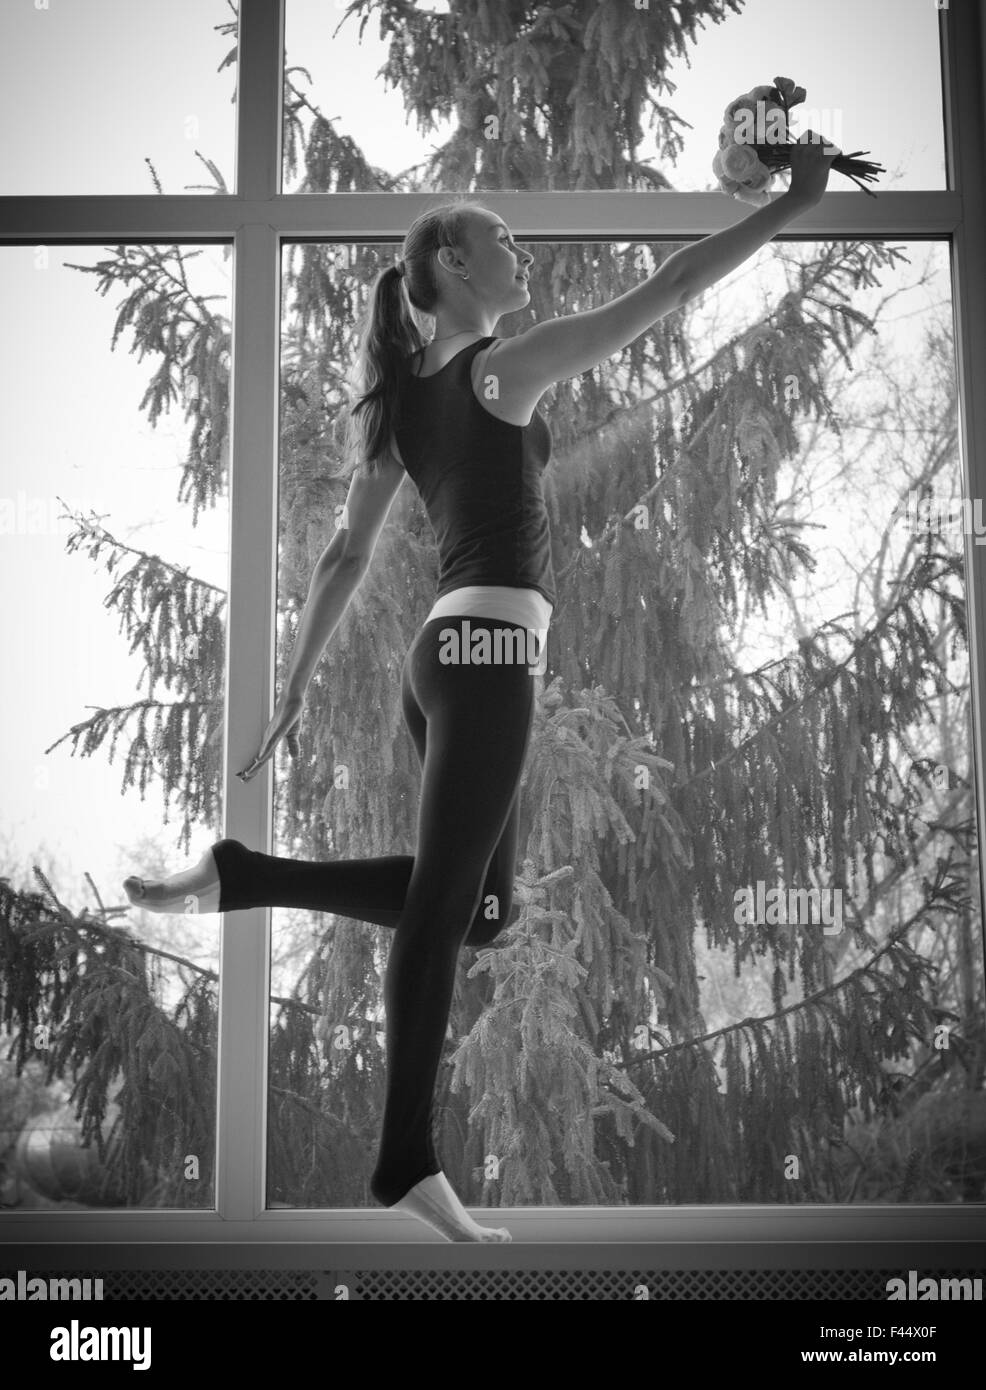 Young dancing girl on window Stock Photo